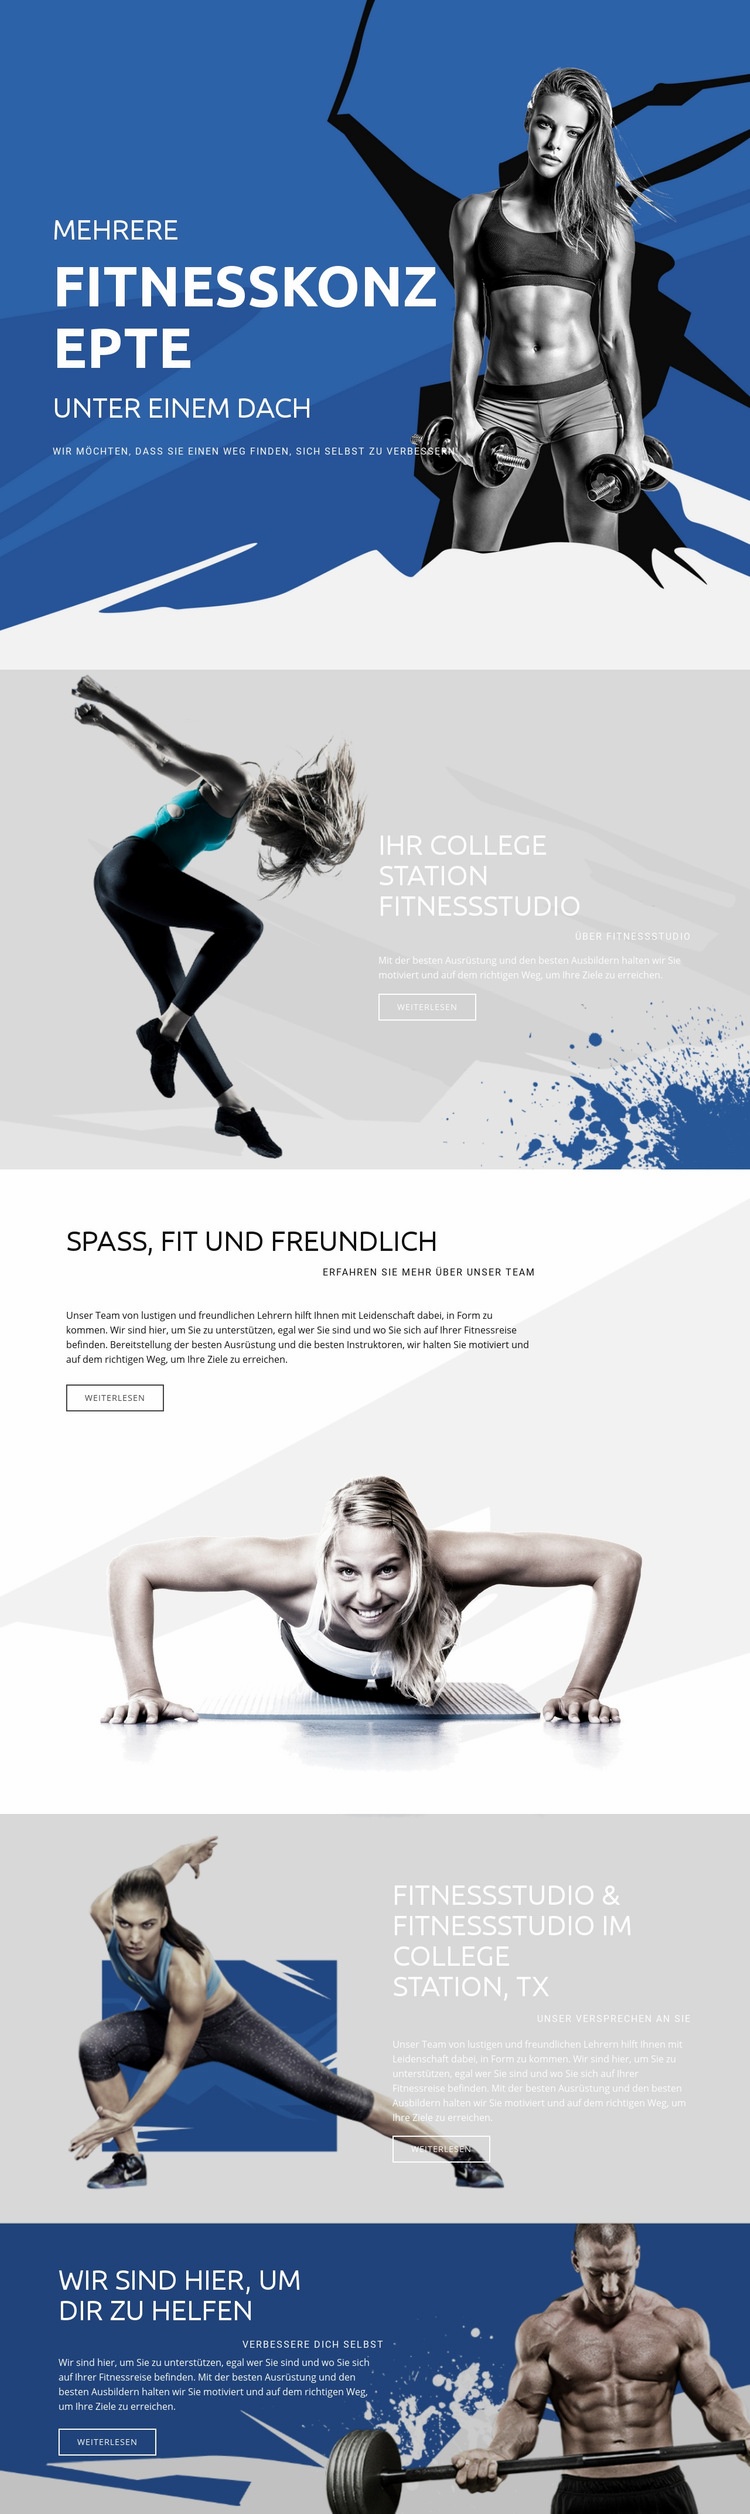 Beste Fitness und Sport Website-Modell